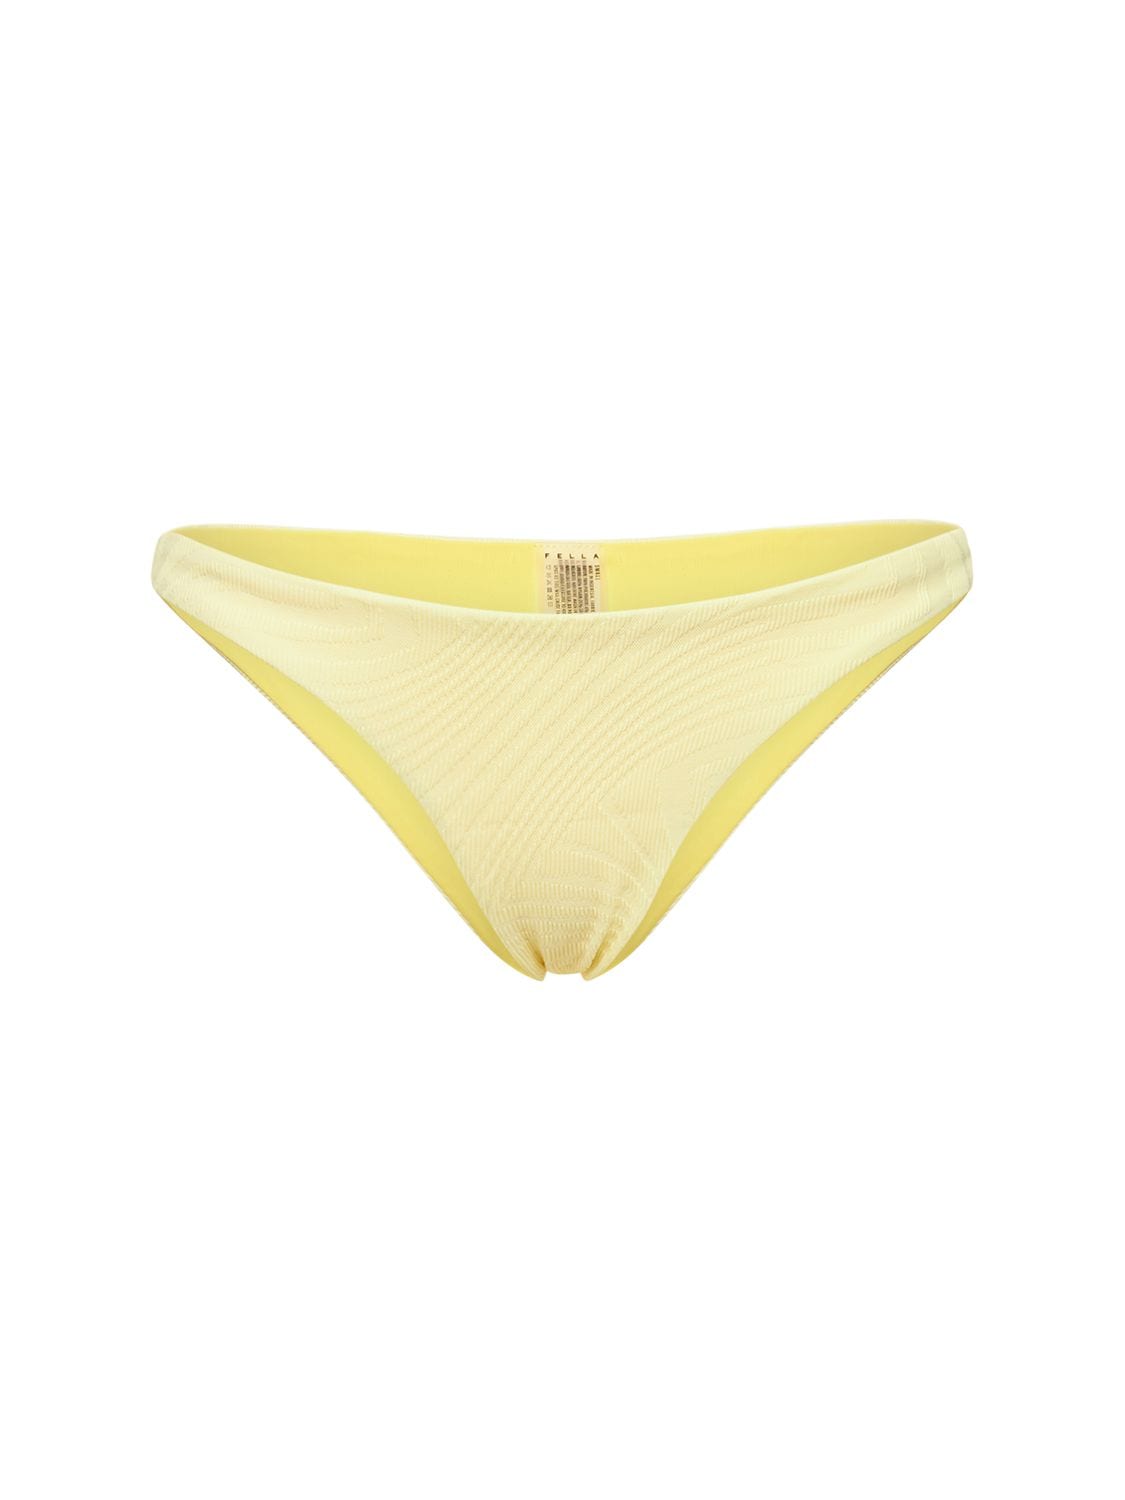 Fella Swim Mr Smith Bikini Bottom In Yellow